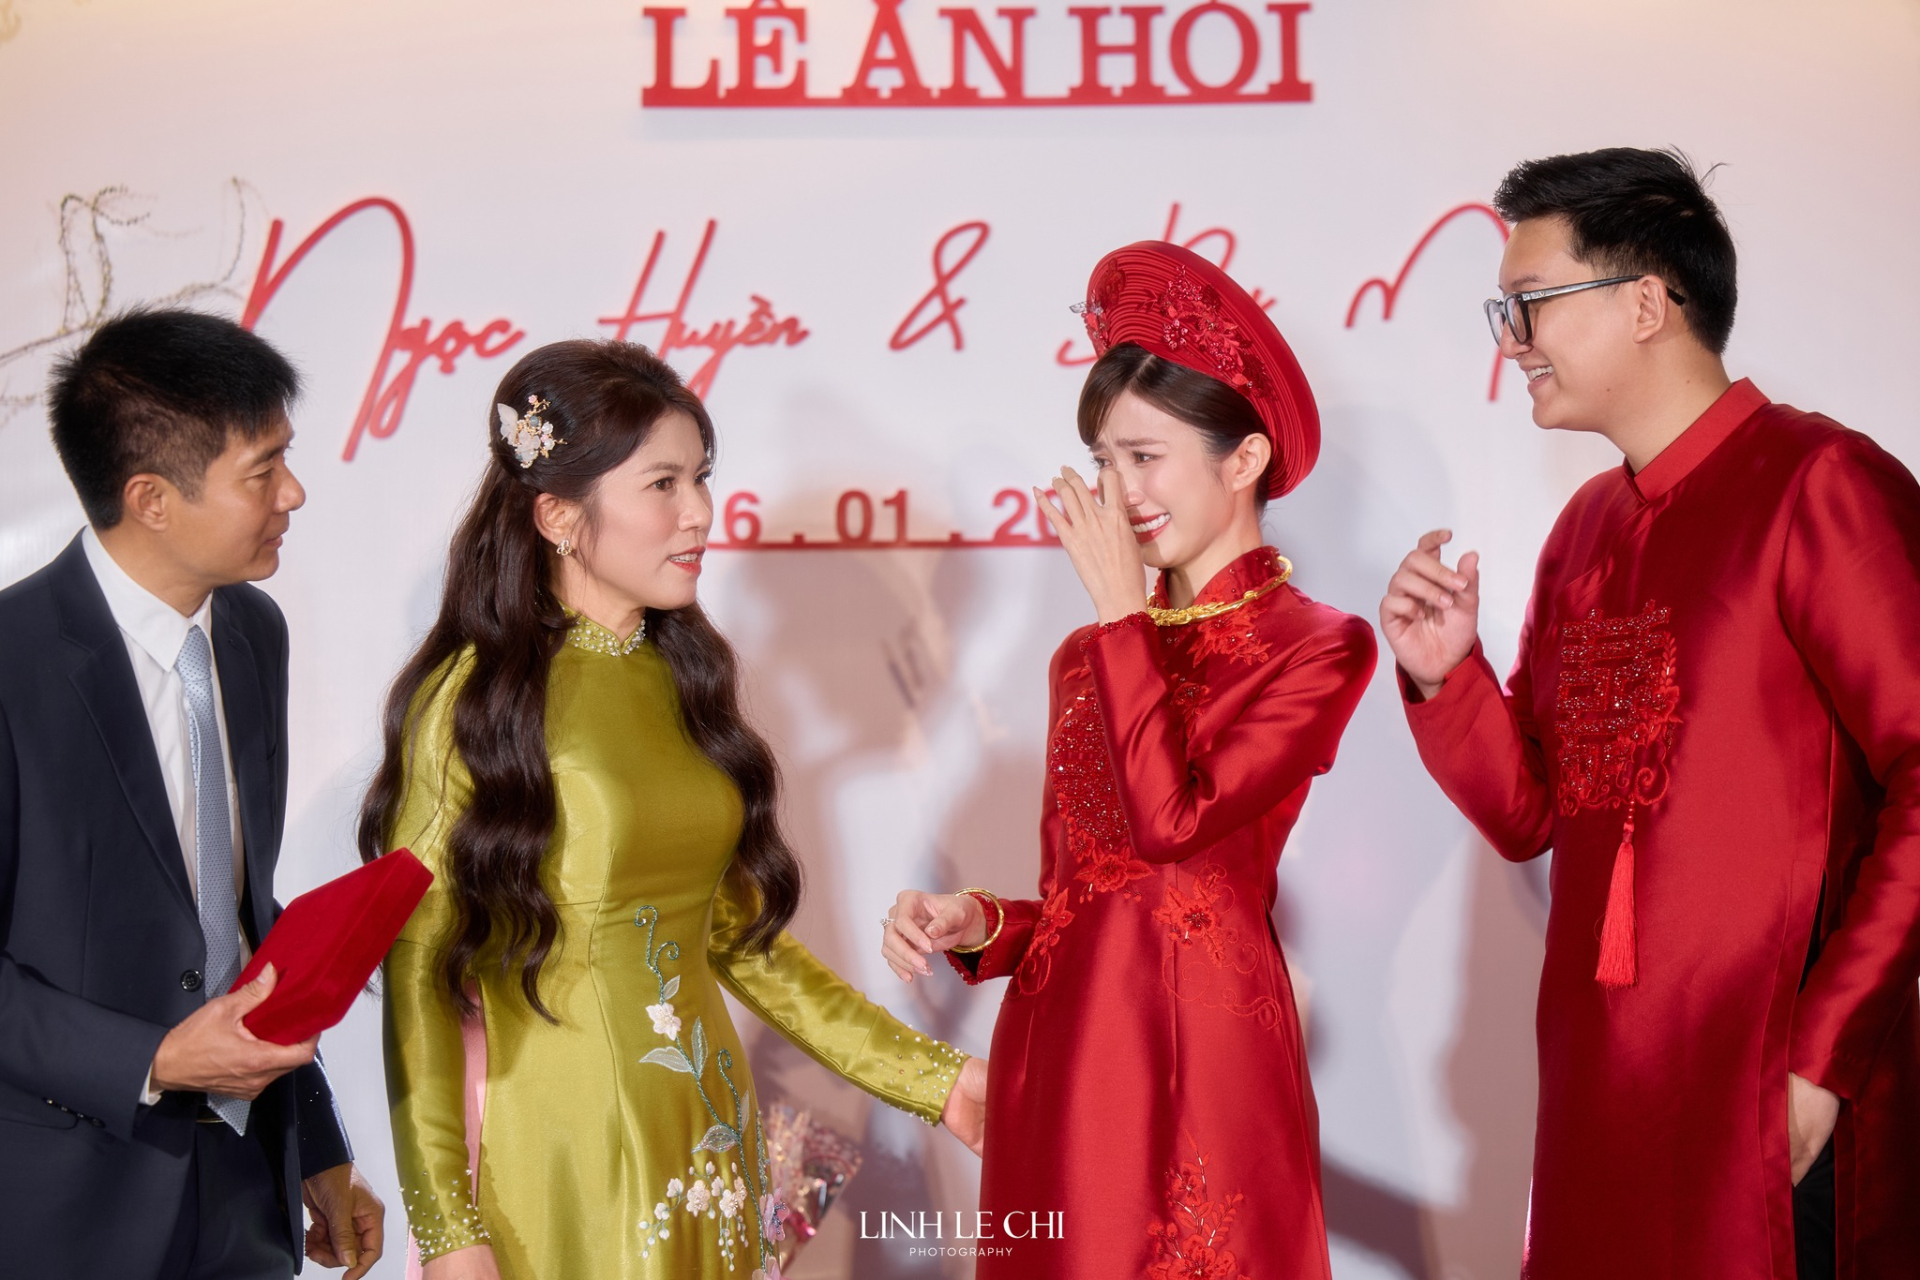 Lễ cưới ngập sắc đỏ của diễn viên Ngọc Huyền và cháu trai NSUT Chí Trung, cô dâu khóc nhận của hồi môn - ảnh 4